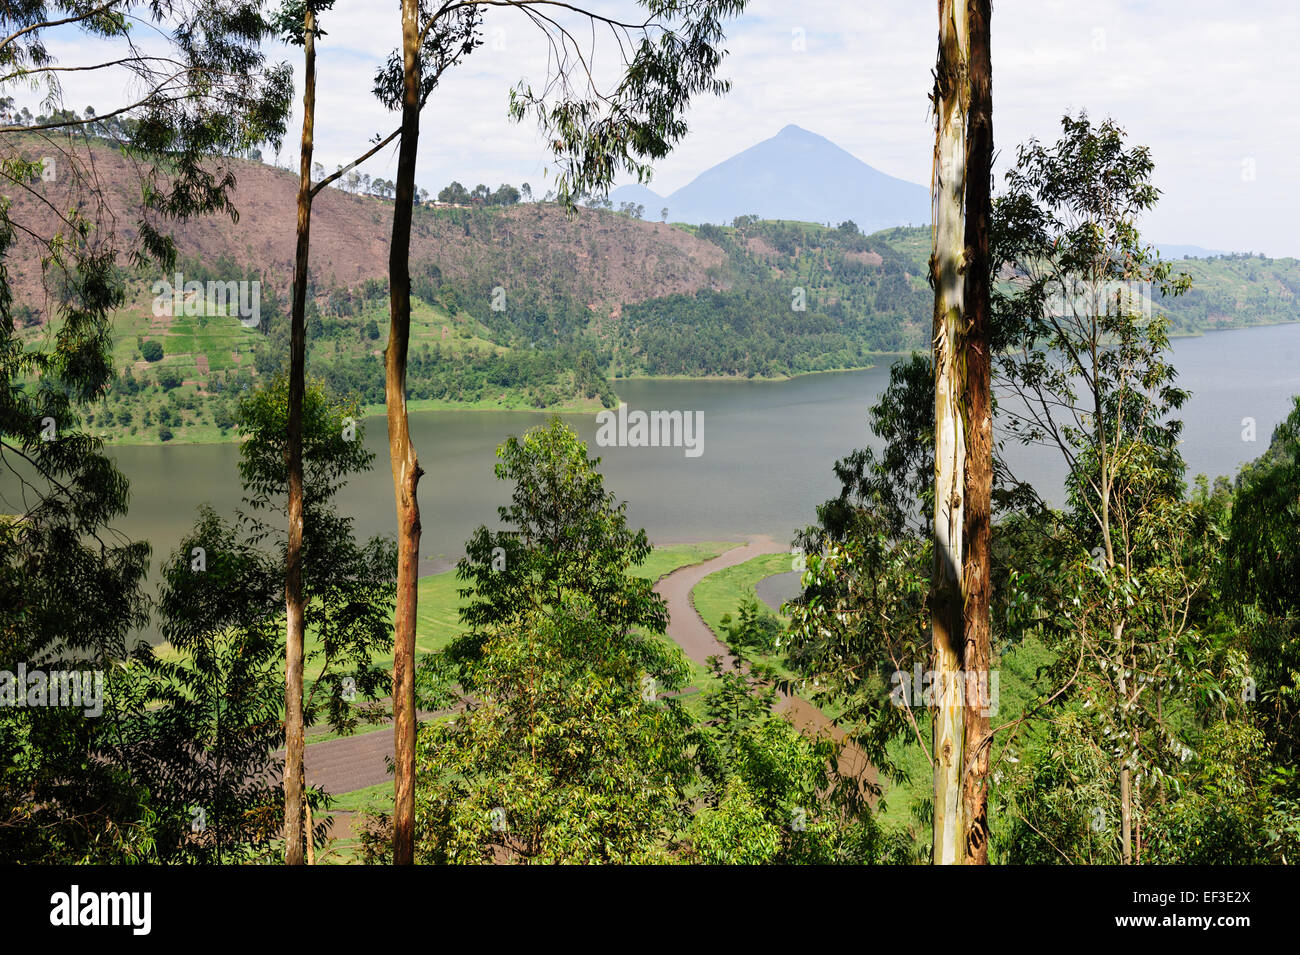 Kleinen braunen Bach See Burera und Ruhondo befindet sich am Fuße des Berges Berg zu erreichen. Ruanda Stockfoto